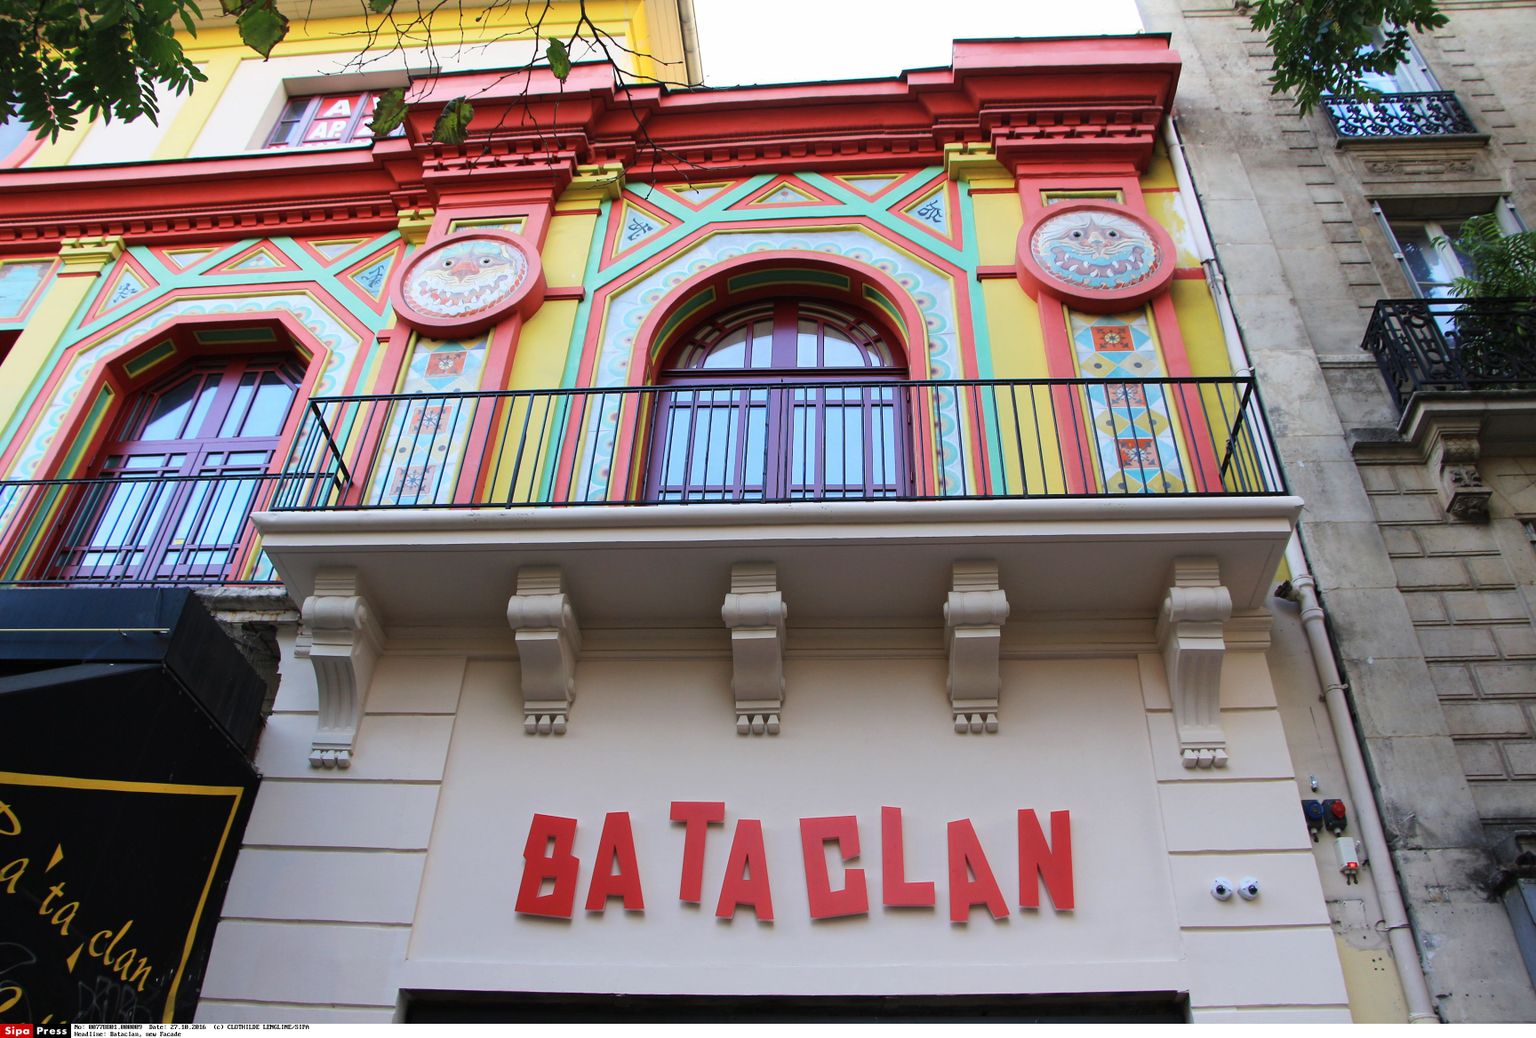 Bataclani kontserdimaja tänavu oktoobris. Kohe pääseb uuesti sinna muusikat Nautima.